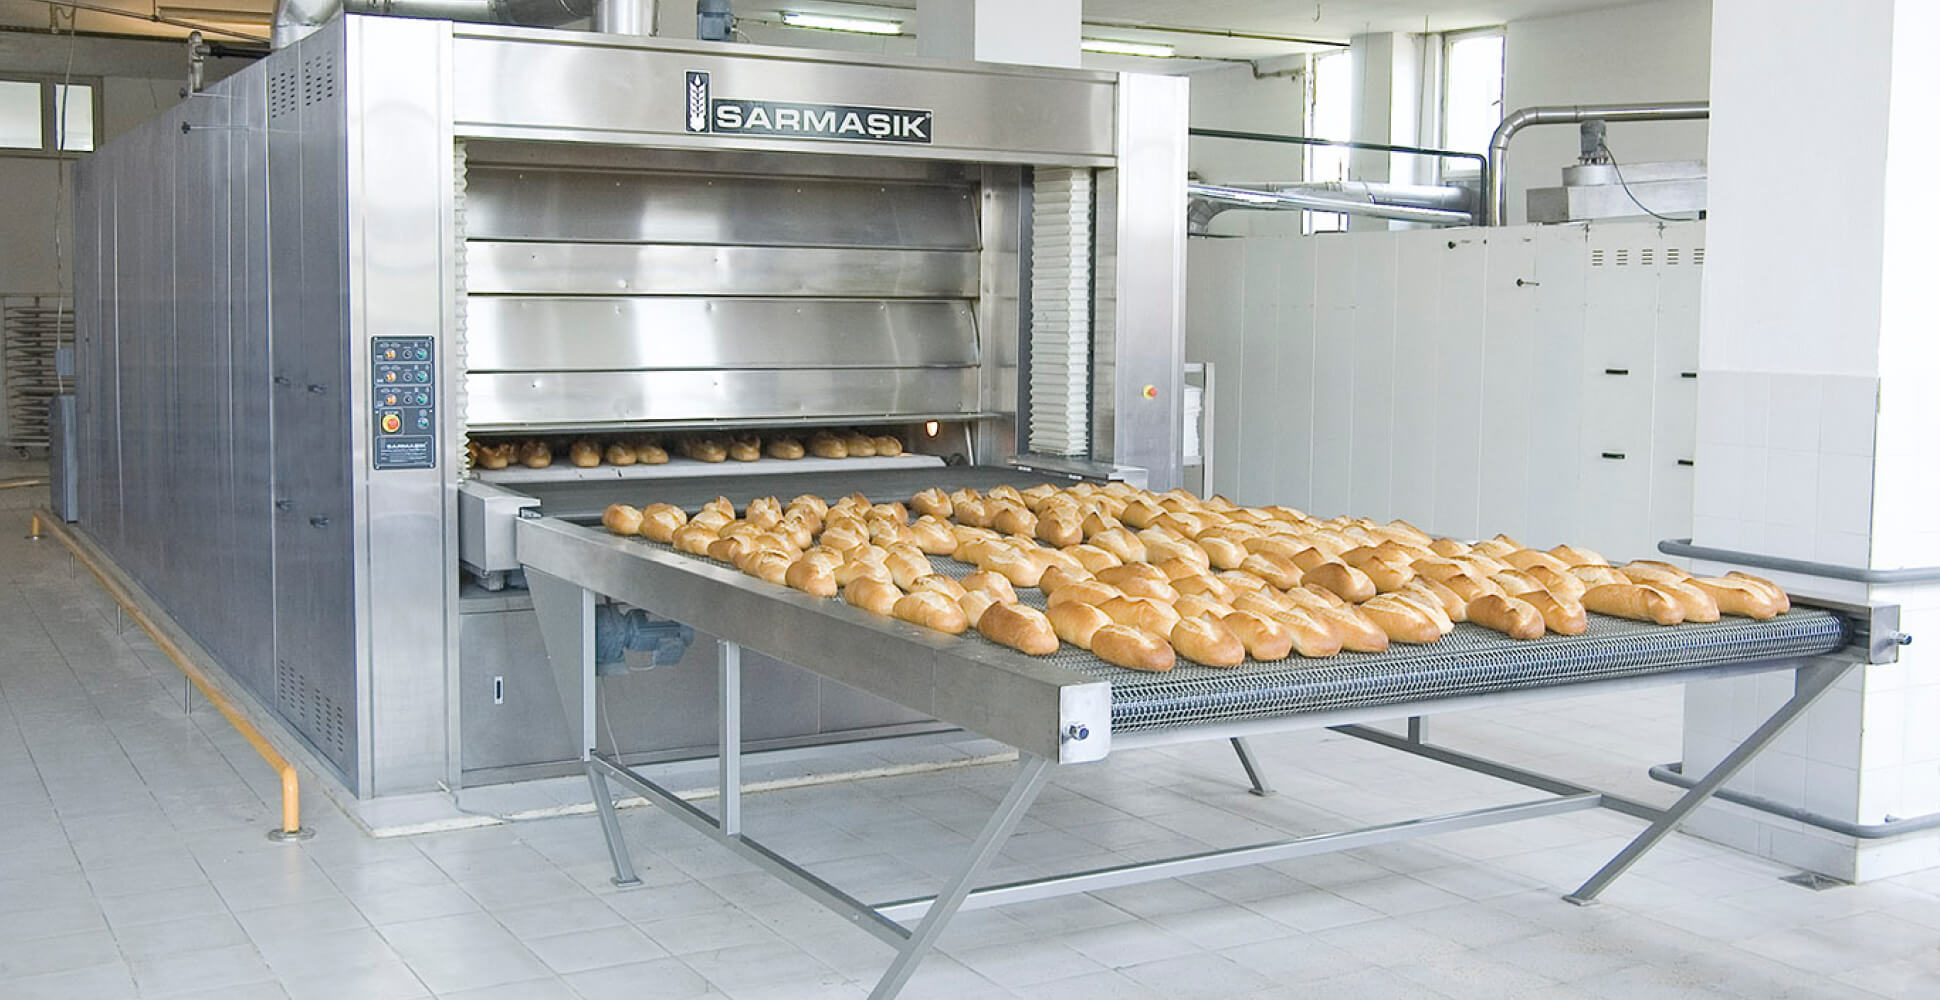 03.01.04 Yari Otomatik Endustriyel Taban Ekmek Tunel Firin Sistemleri Detay